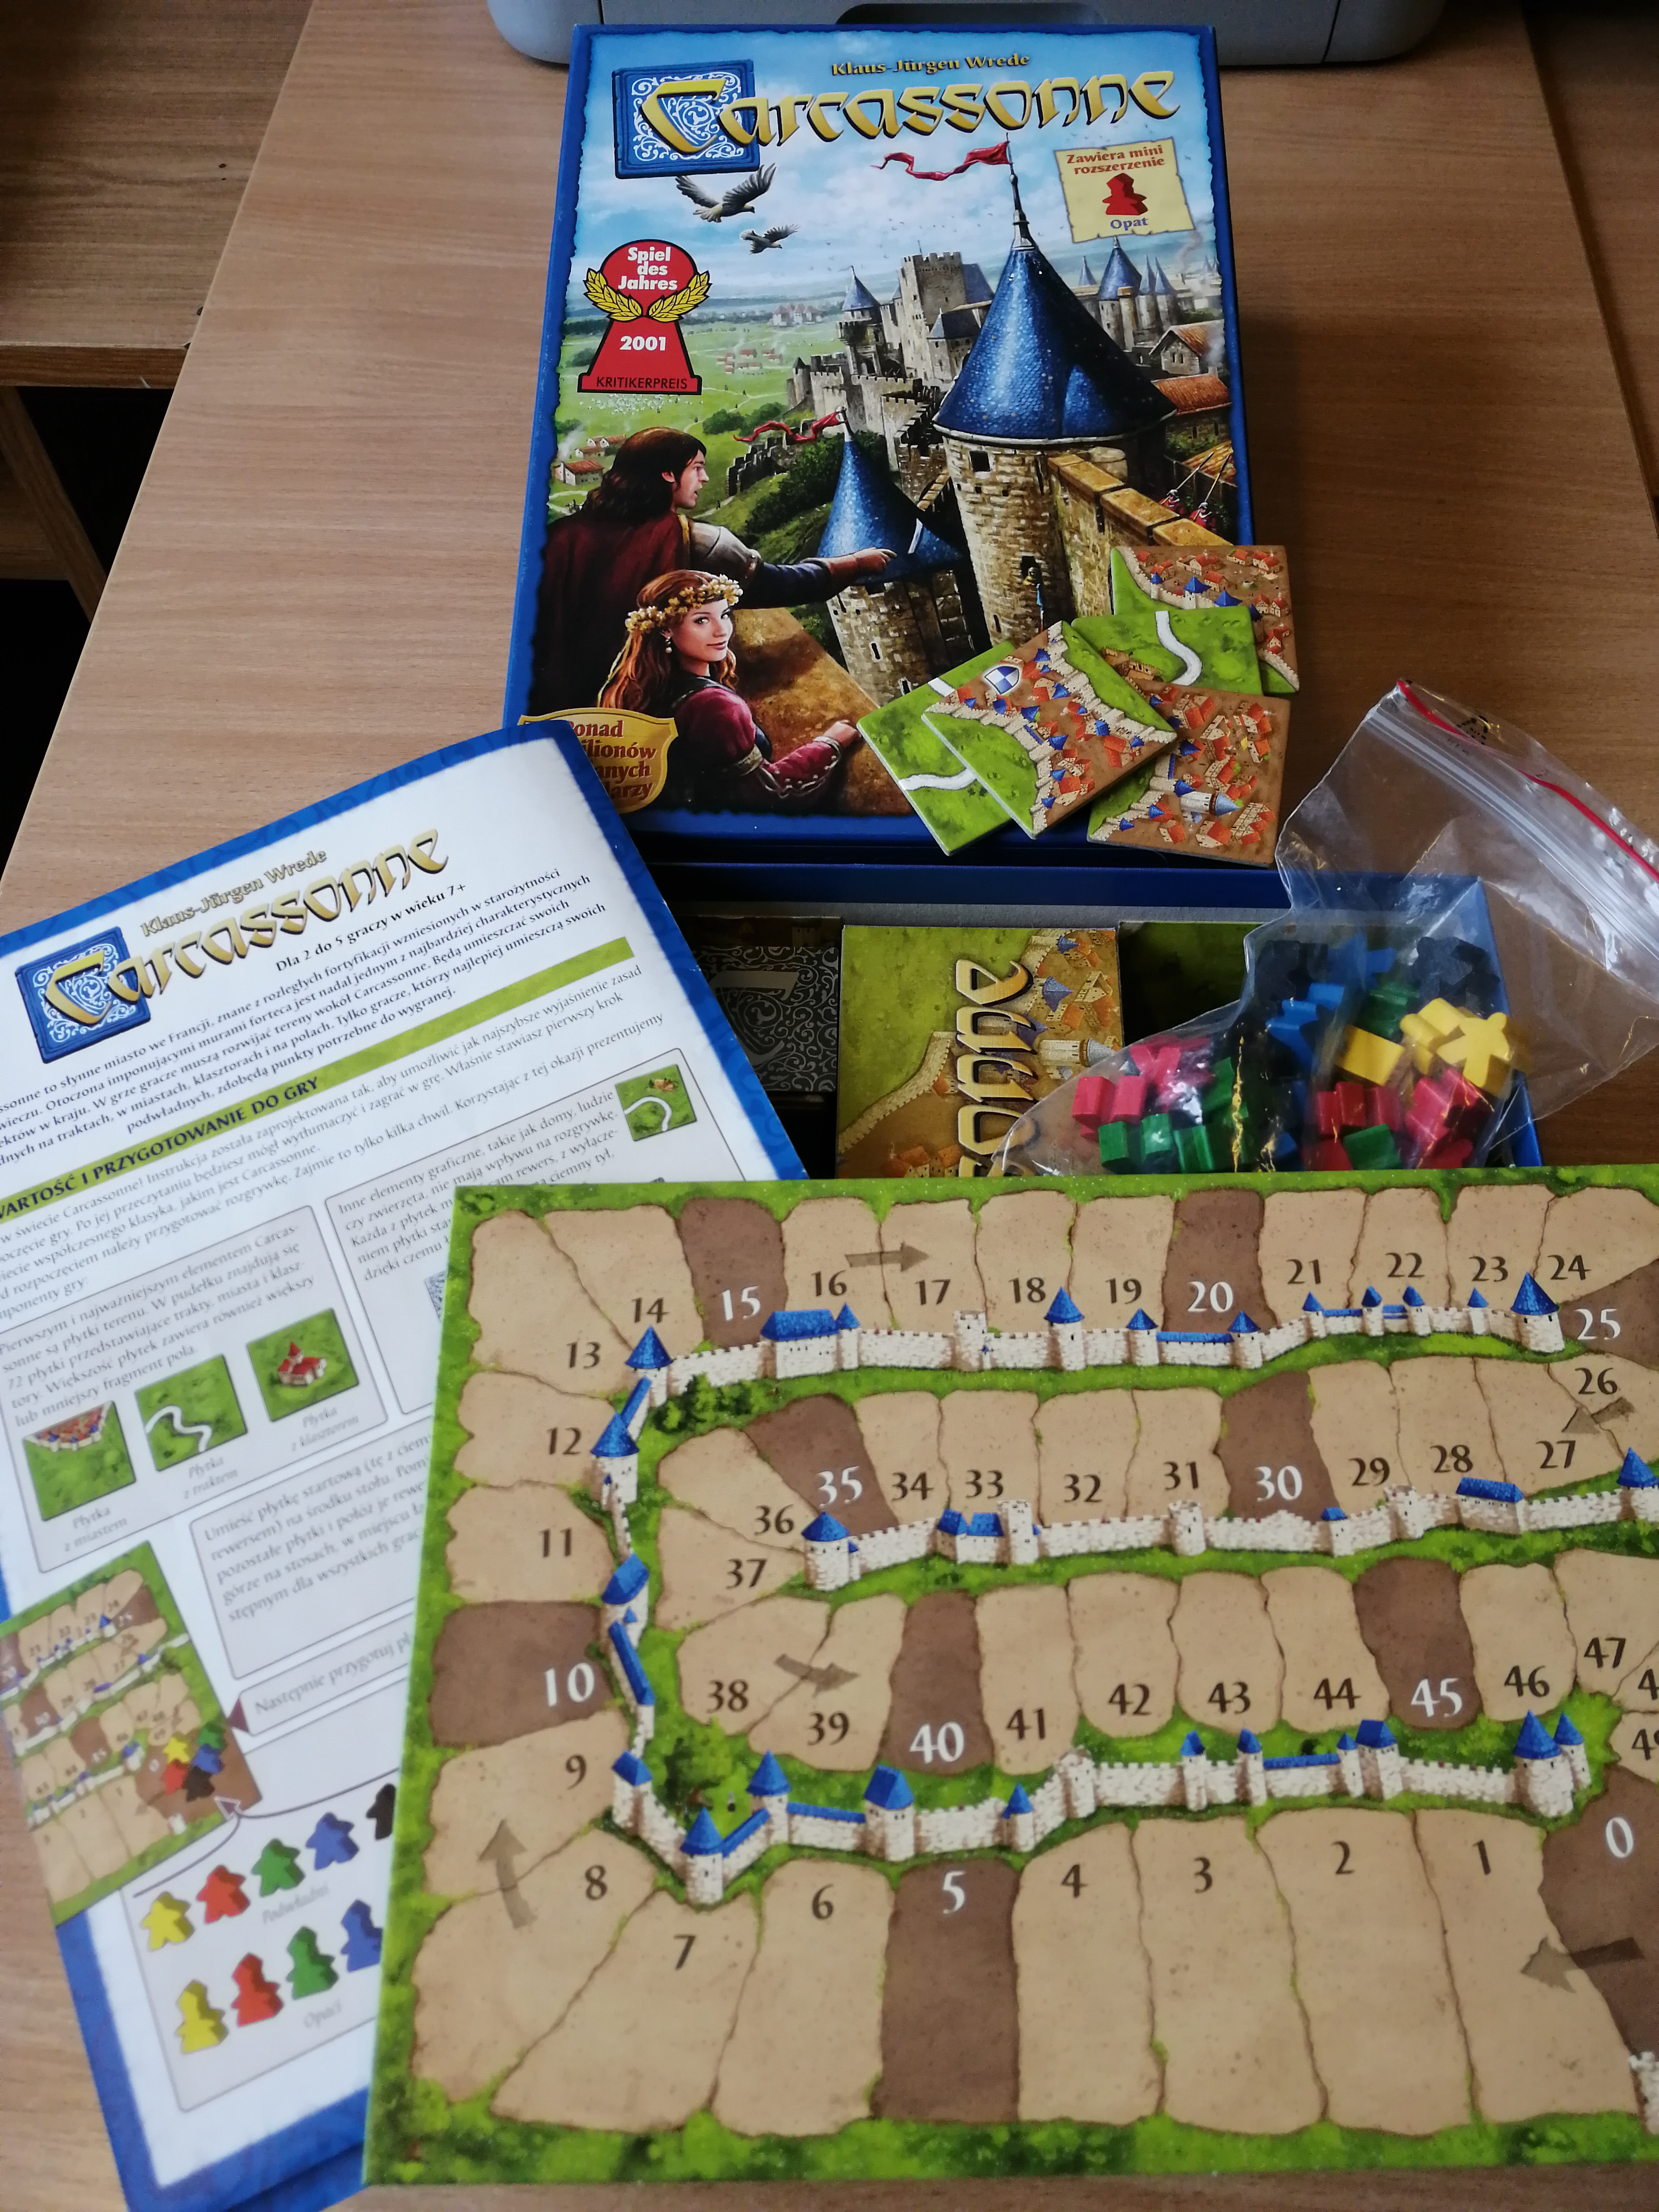 Rozpakowana gra gra planszowa Carcassonne. Widoczna plansza do gry i instrukcja do gry.